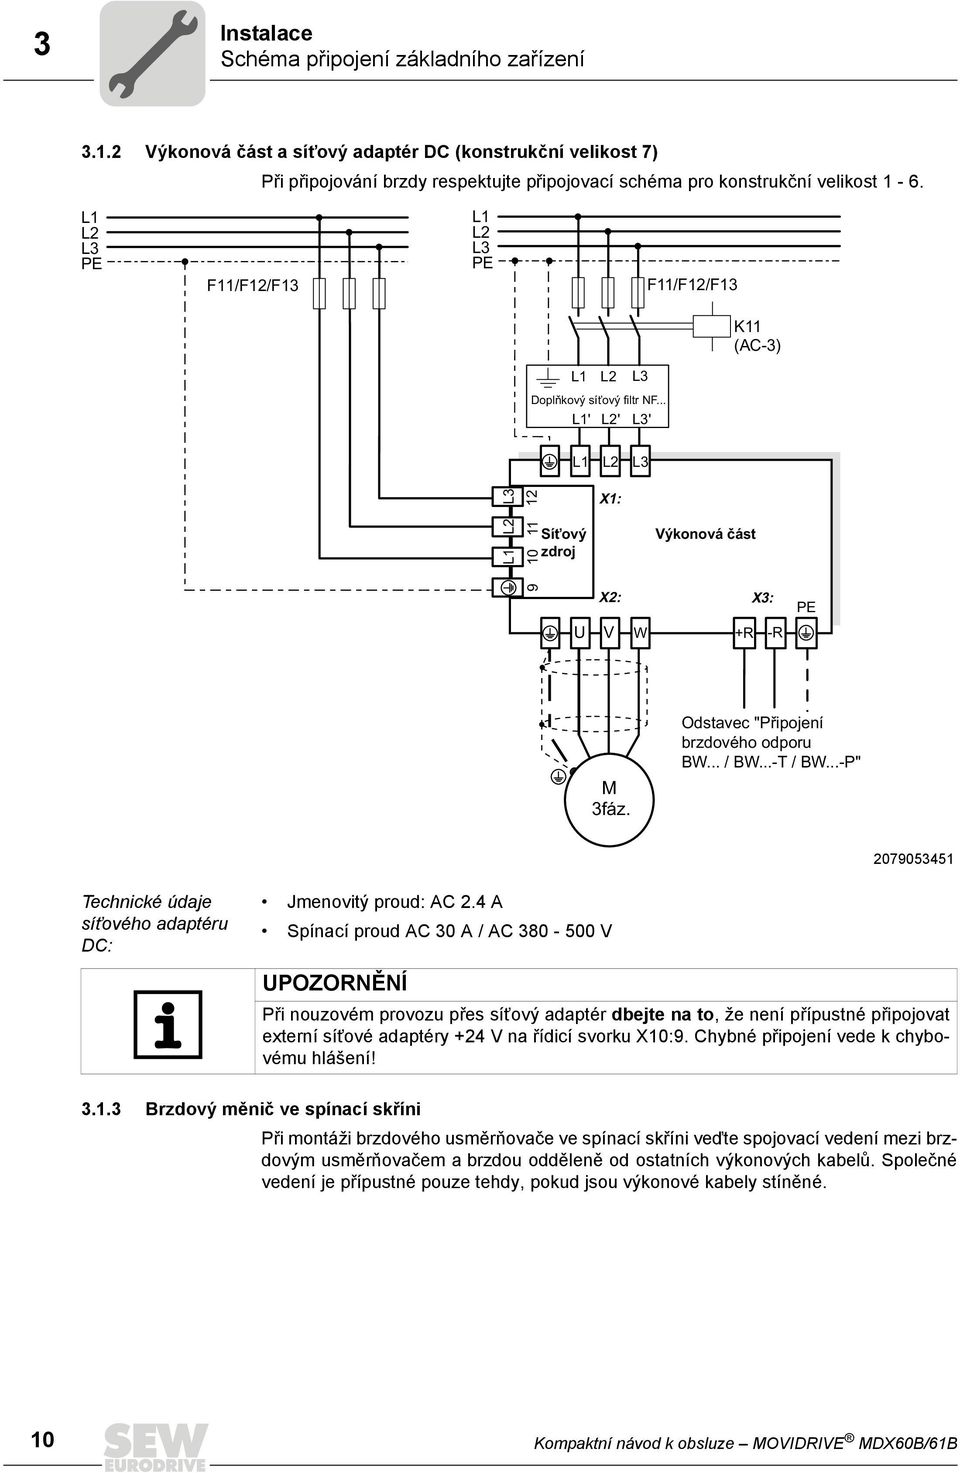 Odstavec "Připojení brzdového odporu BW... / BW...-T / BW...-P" 2079053451 Technické údaje síťového adaptéru DC: Jmenovitý proud: AC 2.